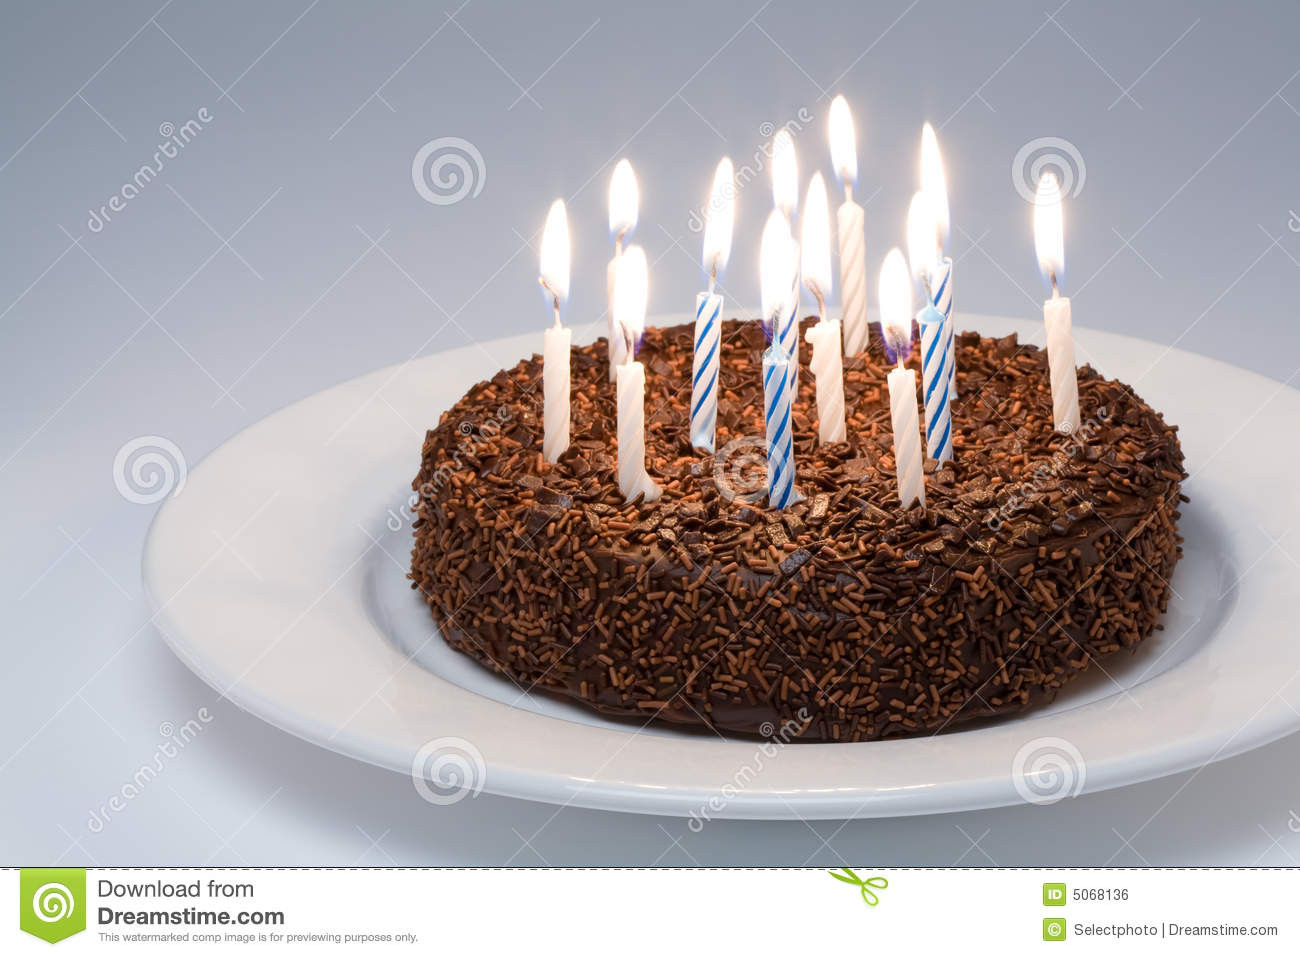 Geburtstagswünsche Kuchen
 Geburtstag Bilder Kuchen